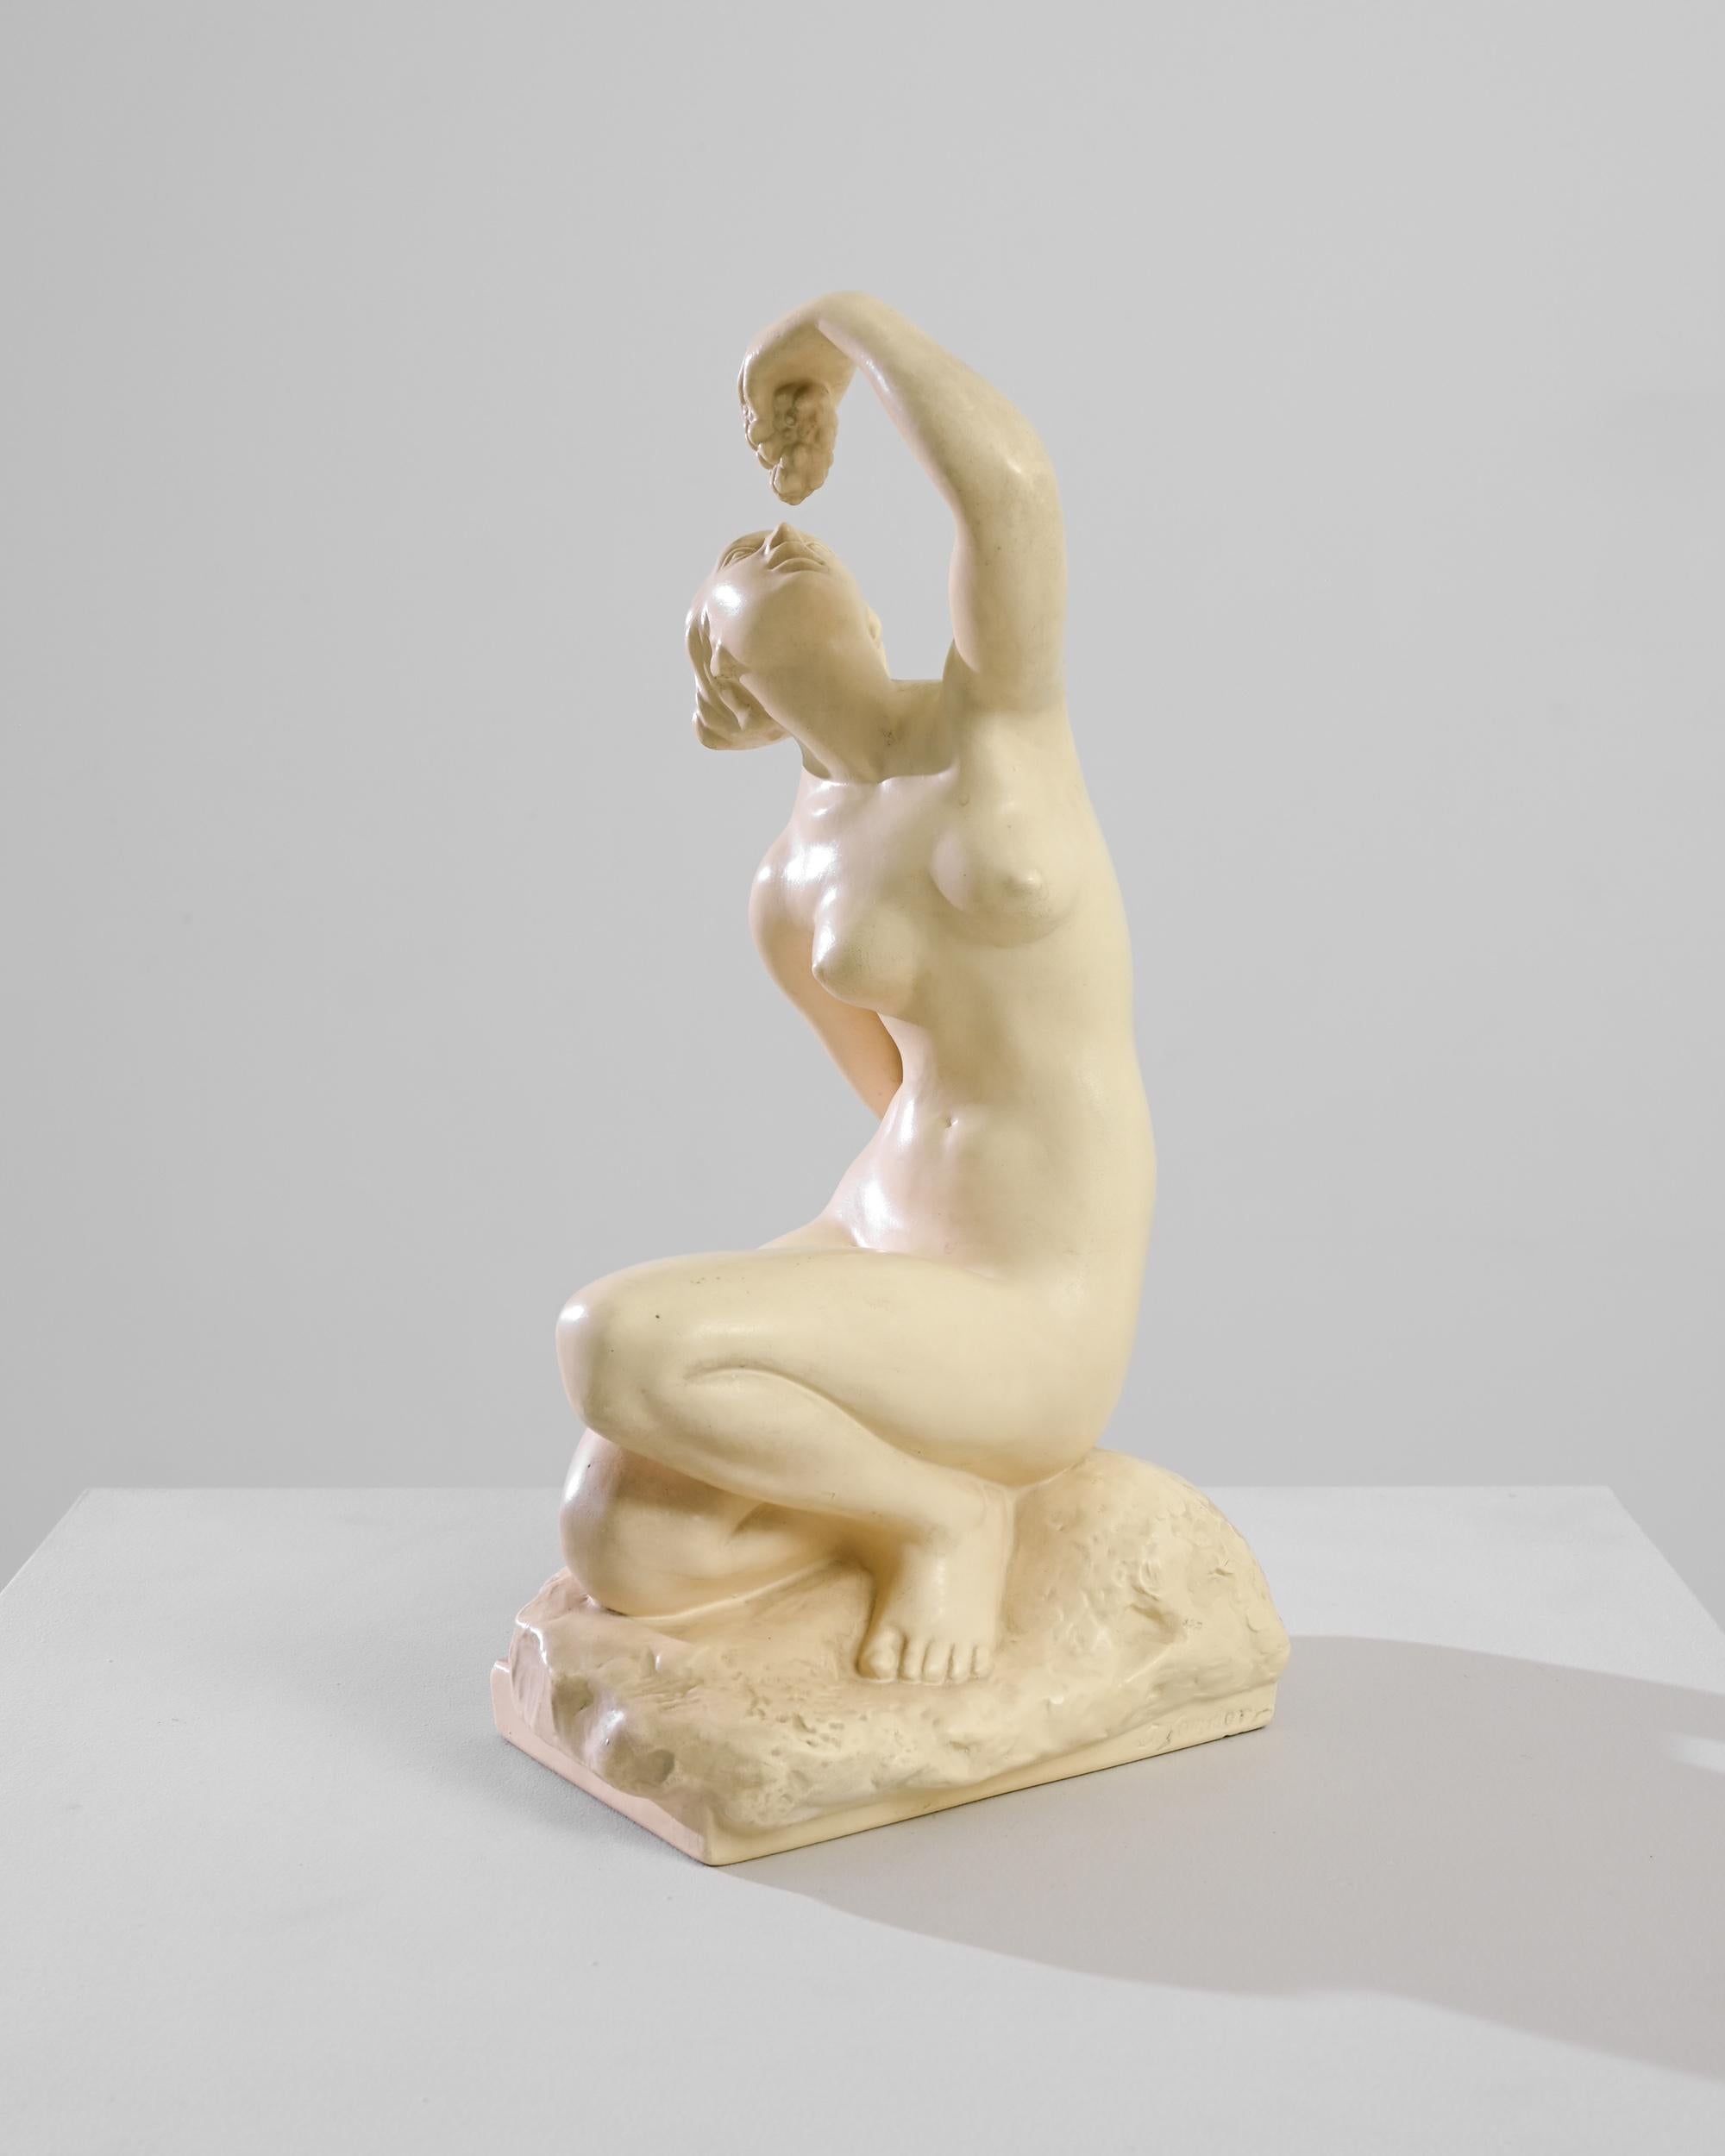 Cette sculpture en plâtre d'Europe centrale du XXe siècle représente une scène intemporelle d'indulgence - une femme en train de manger du raisin. L'élégance du moment est immortalisée dans un plâtre lisse, les courbes et les contours de sa forme